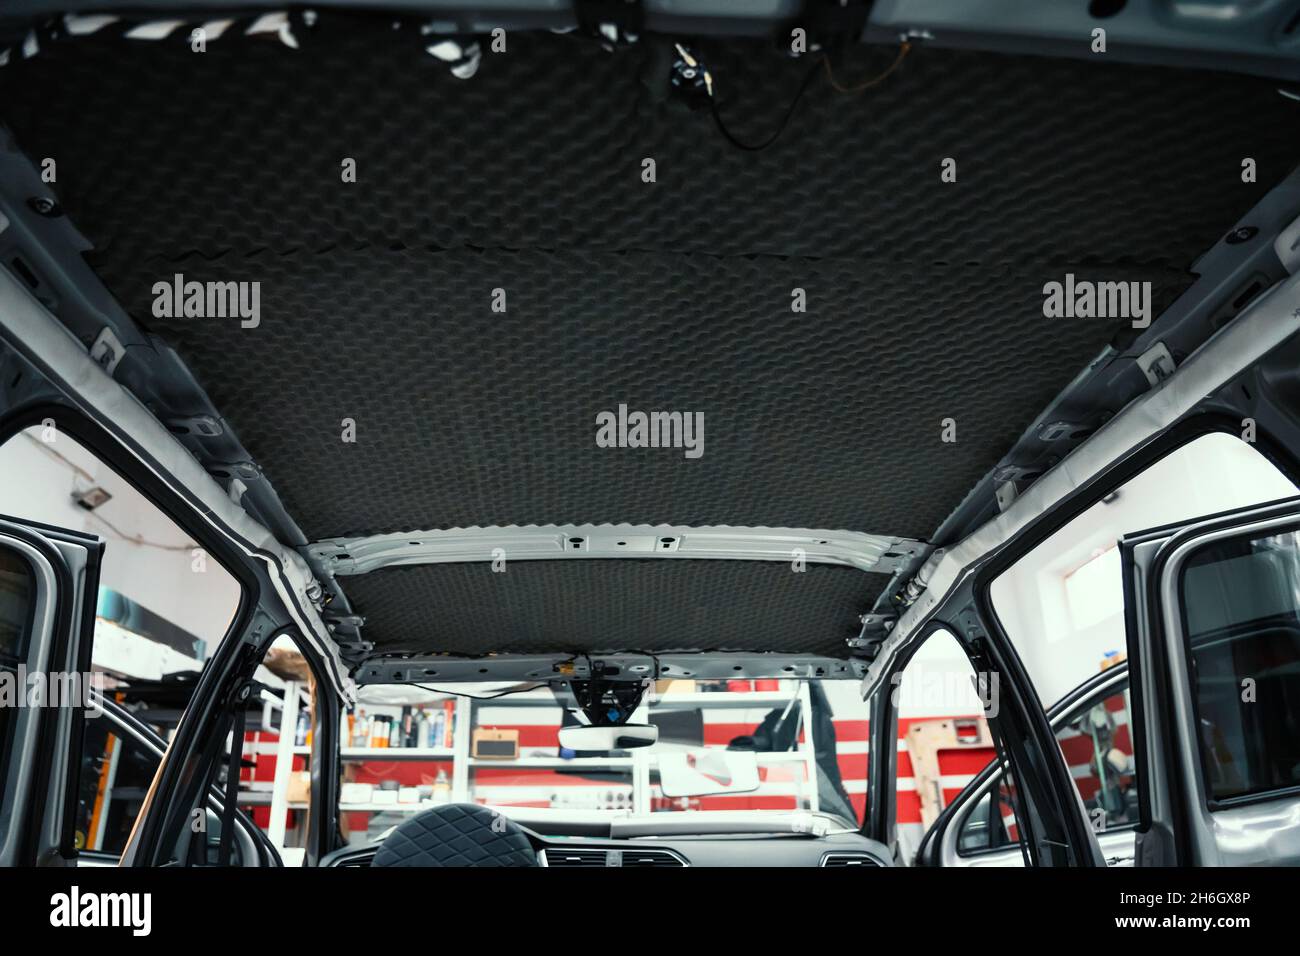 Auto ist dabei, Schalldämmung zu installieren. Dach des Autos ist von innen  mit schalldichten Material, Auto-Tuning abgedeckt Stockfotografie - Alamy